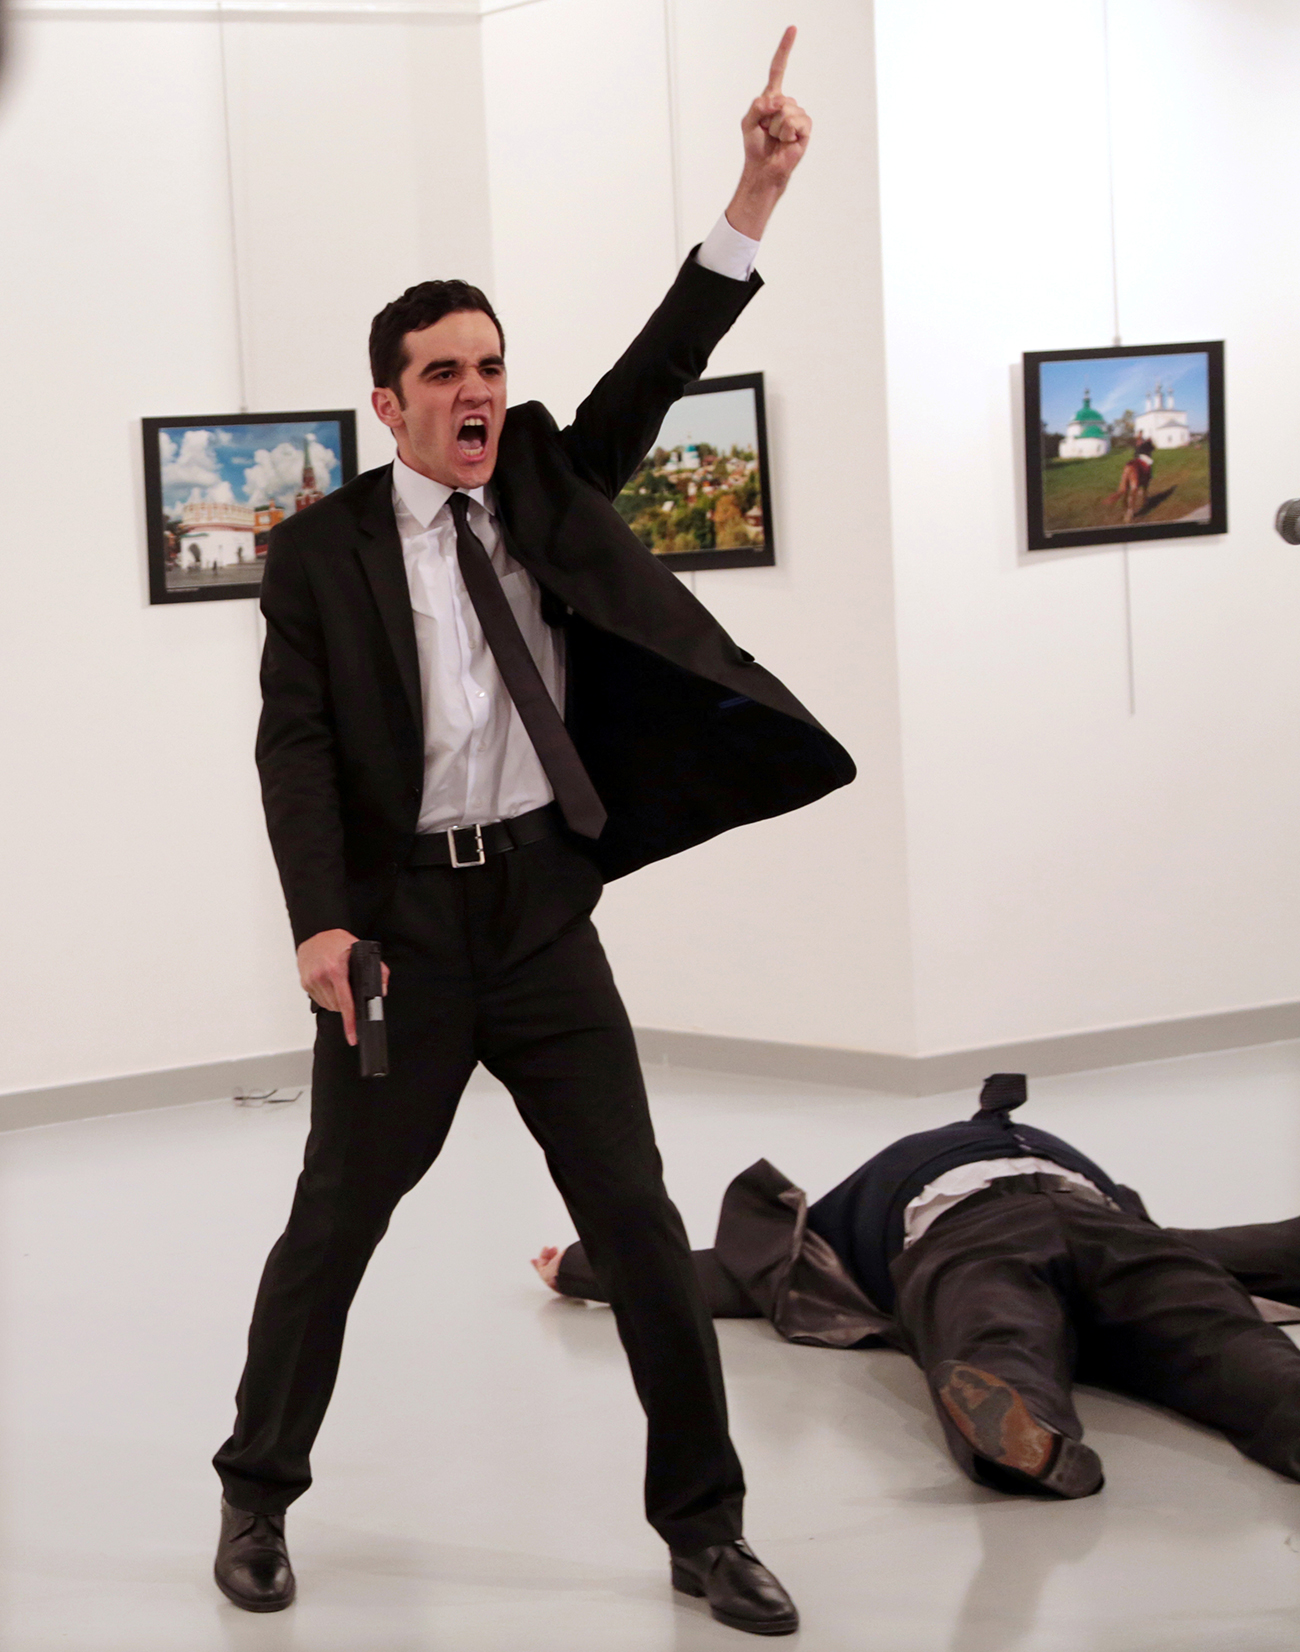 Il corpo dell’ambasciatore russo in Turchia Andrej Karlov giace a terra dopo essere stato colpito a morte dall’attentatore Mevlut Mert Altintas durante l’inaugurazione di una mostra ad Ankara, in Turchia. La foto, realizzata dal fotografo turco Burhan Ozbilici, ha vinto il World Press Photo 2017. Fonte: Burhan Ozbilici / Reuters